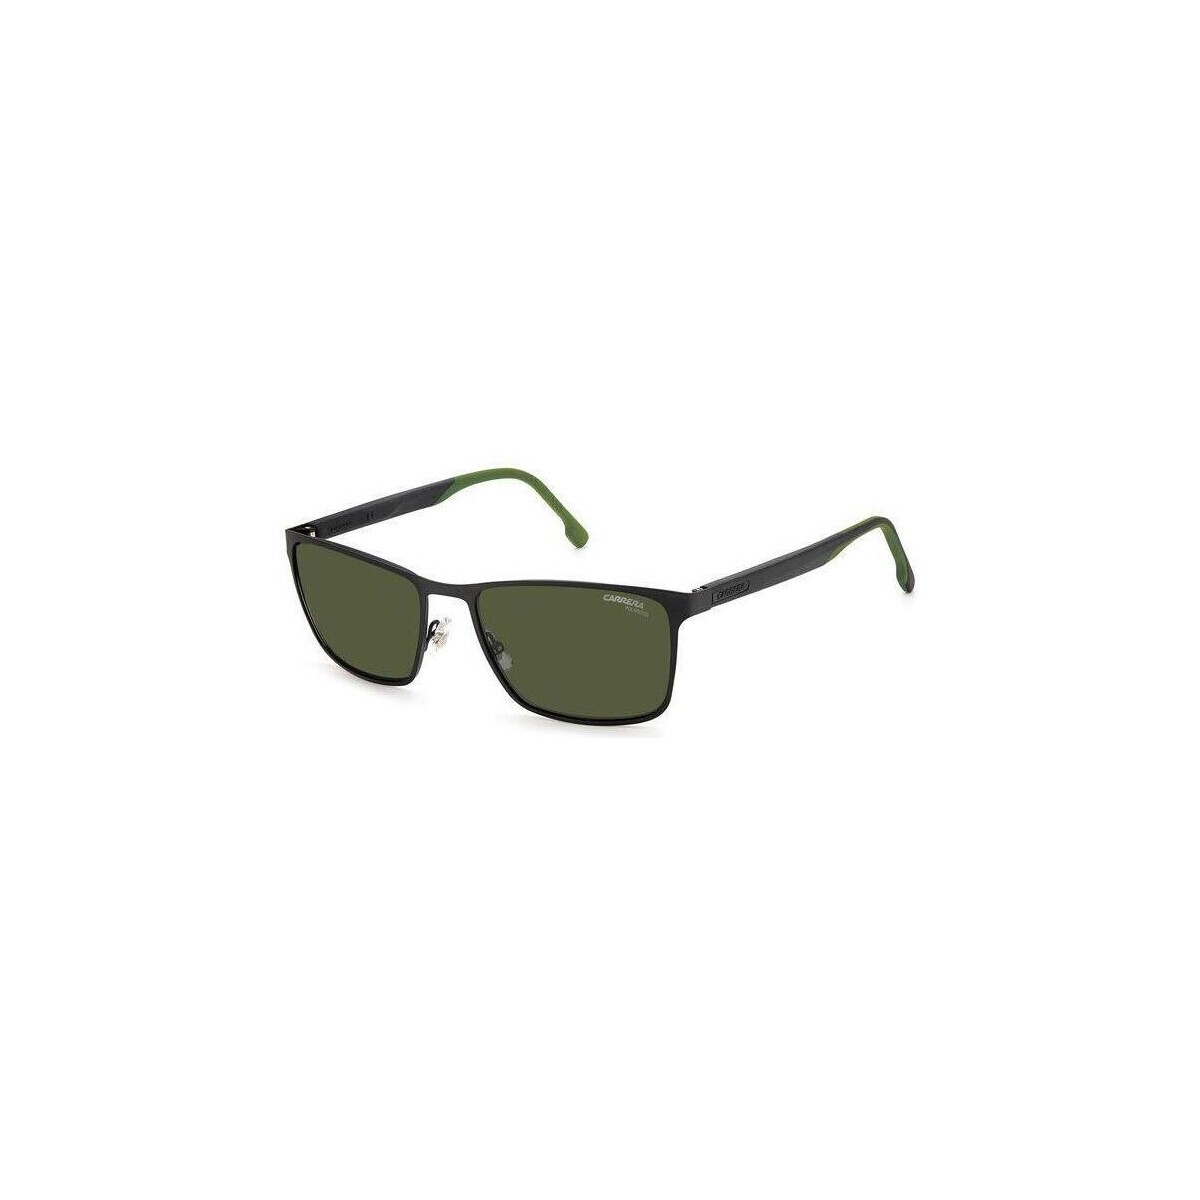 Orologi & Gioielli Uomo Occhiali da sole Carrera 8048/S Occhiali da sole, Nero/Verde/Verde, 58 mm Altri